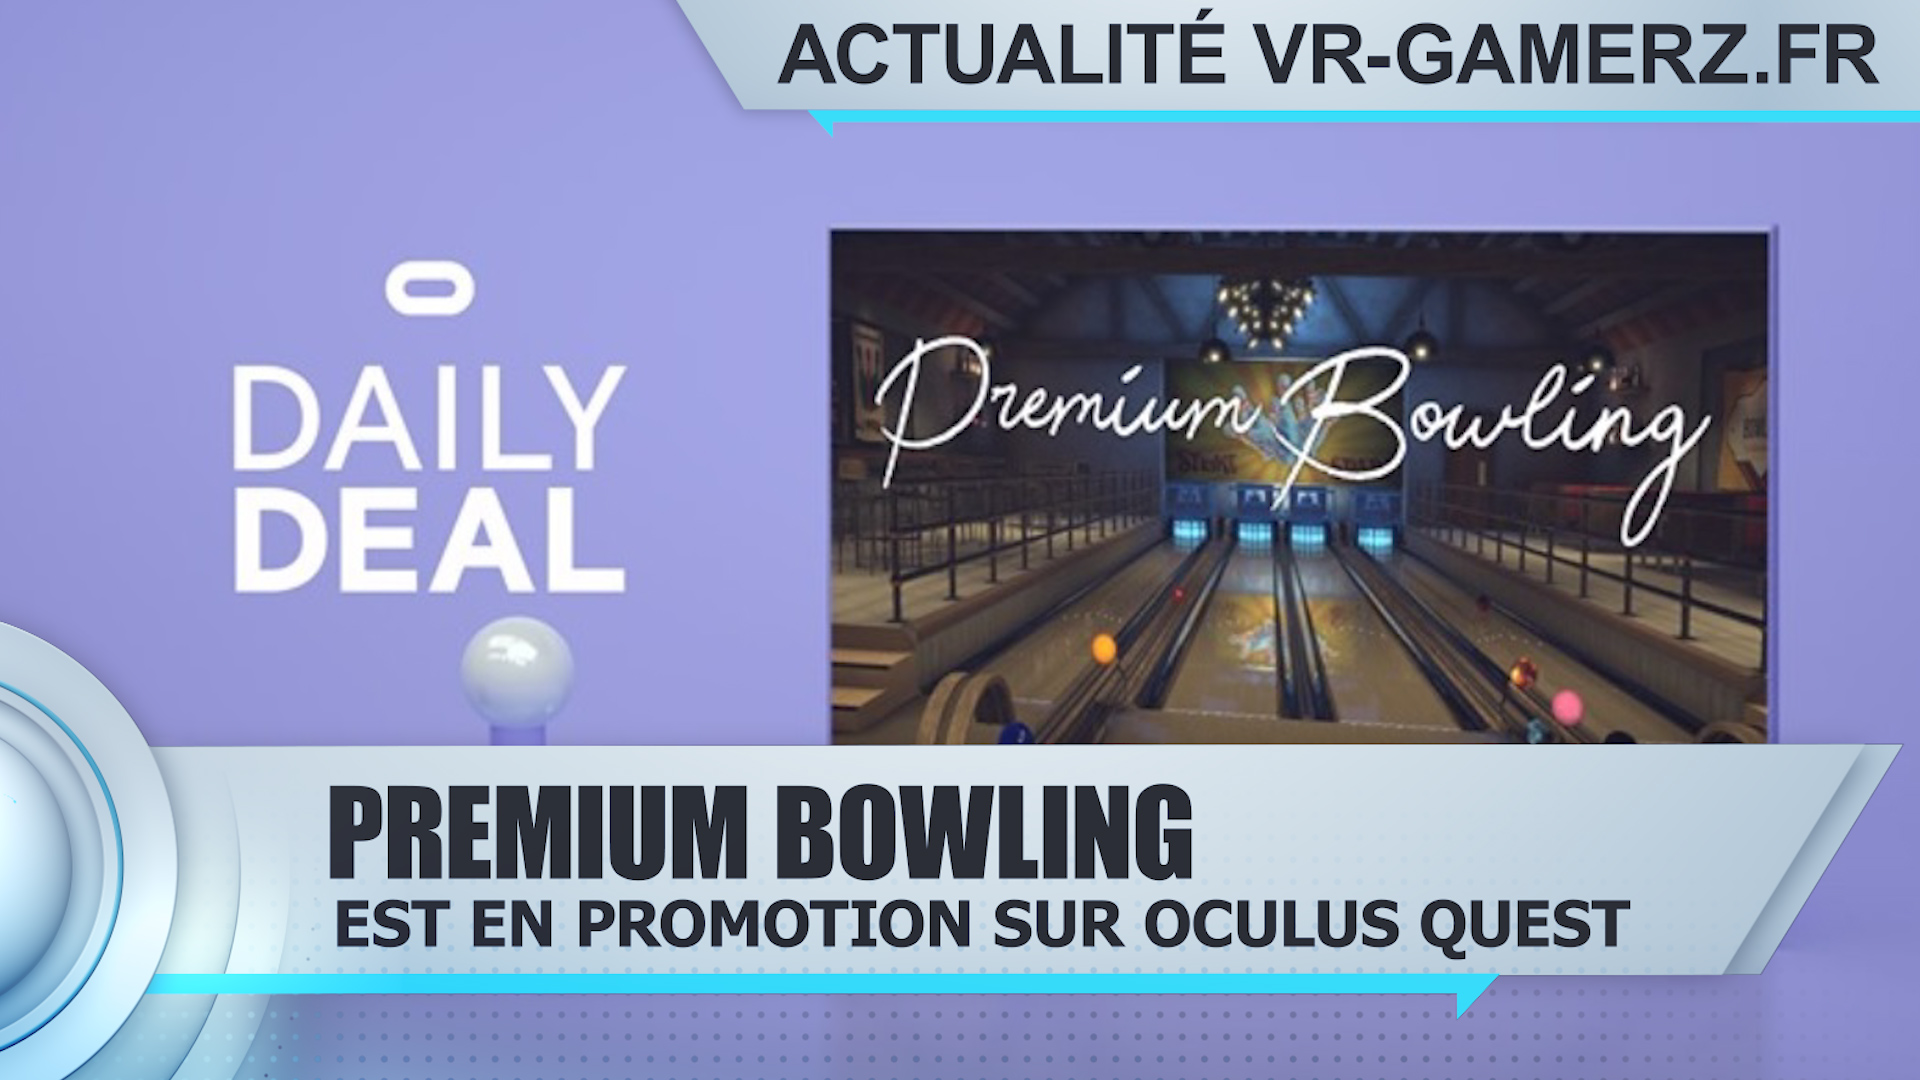 Premium bowling est en promotion sur Oculus quest